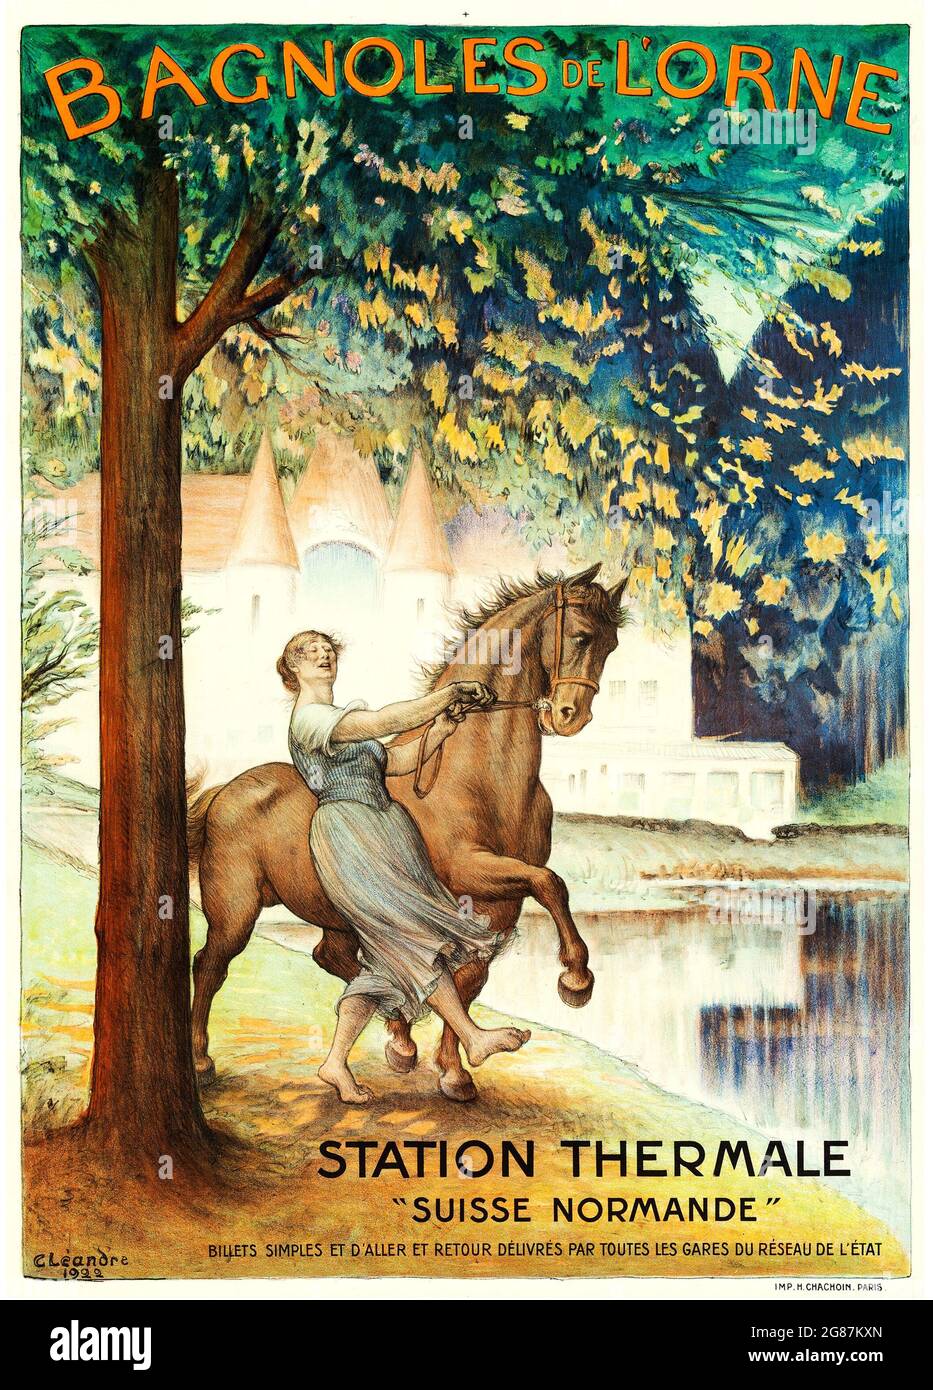 Vintage poster. Bagnoles de L'Orne. Station Thermale 'Suisse Normande'. Vintage French travel poster advertising. France 1922. Artist: C. Leandre. Stock Photo